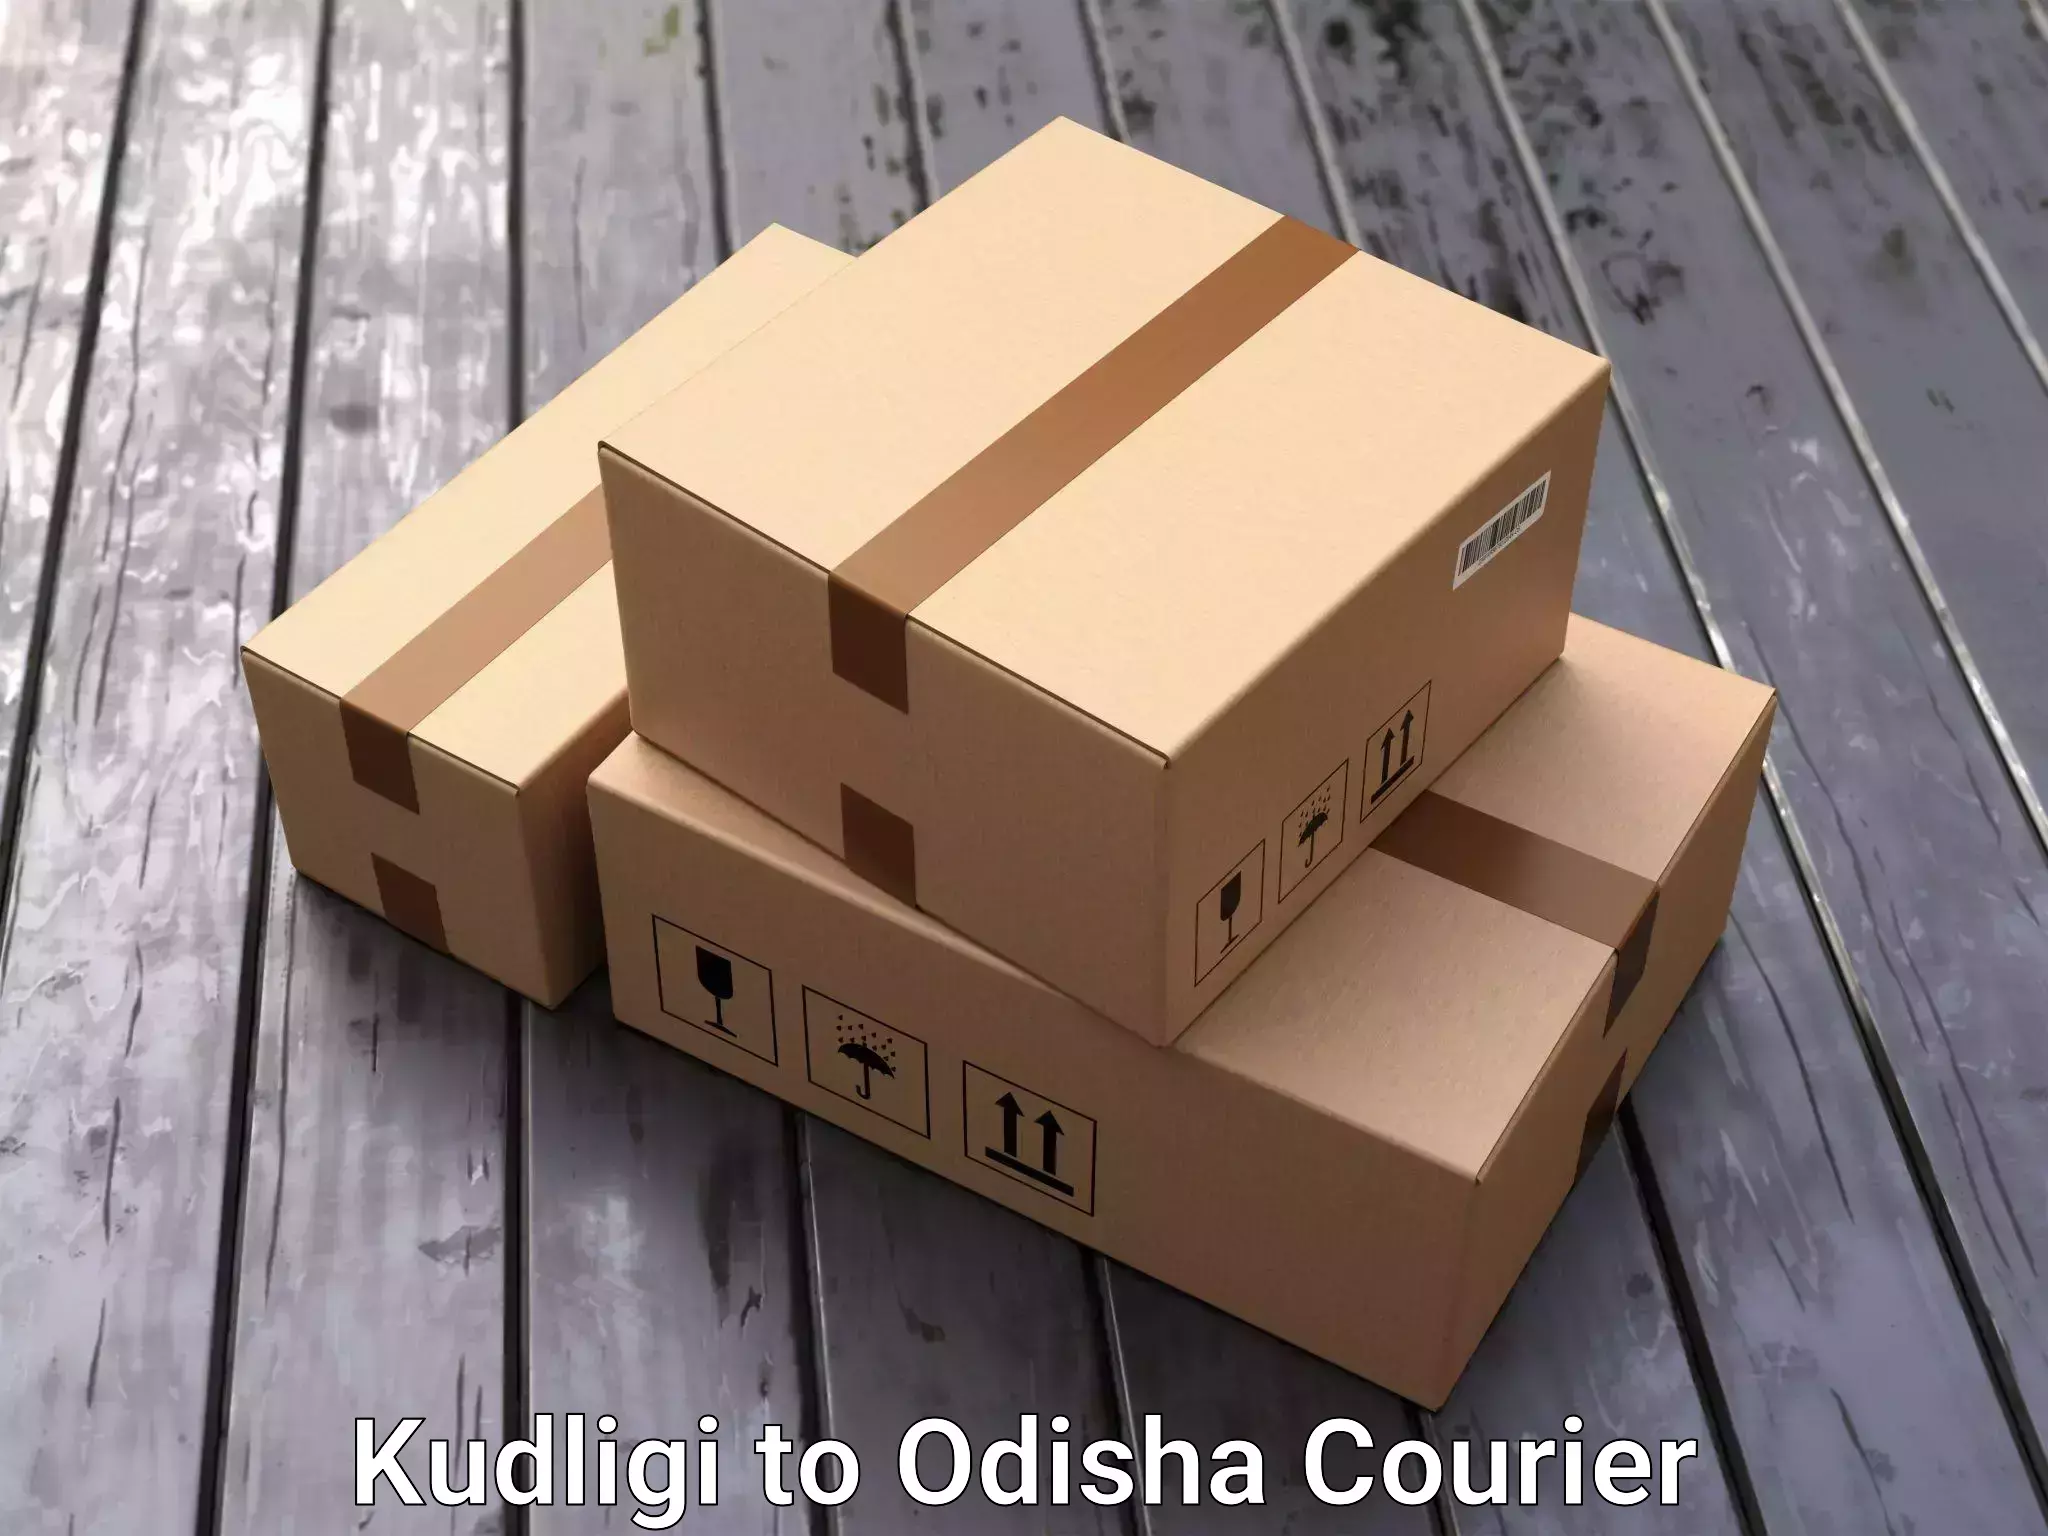 Professional moving company Kudligi to Basta